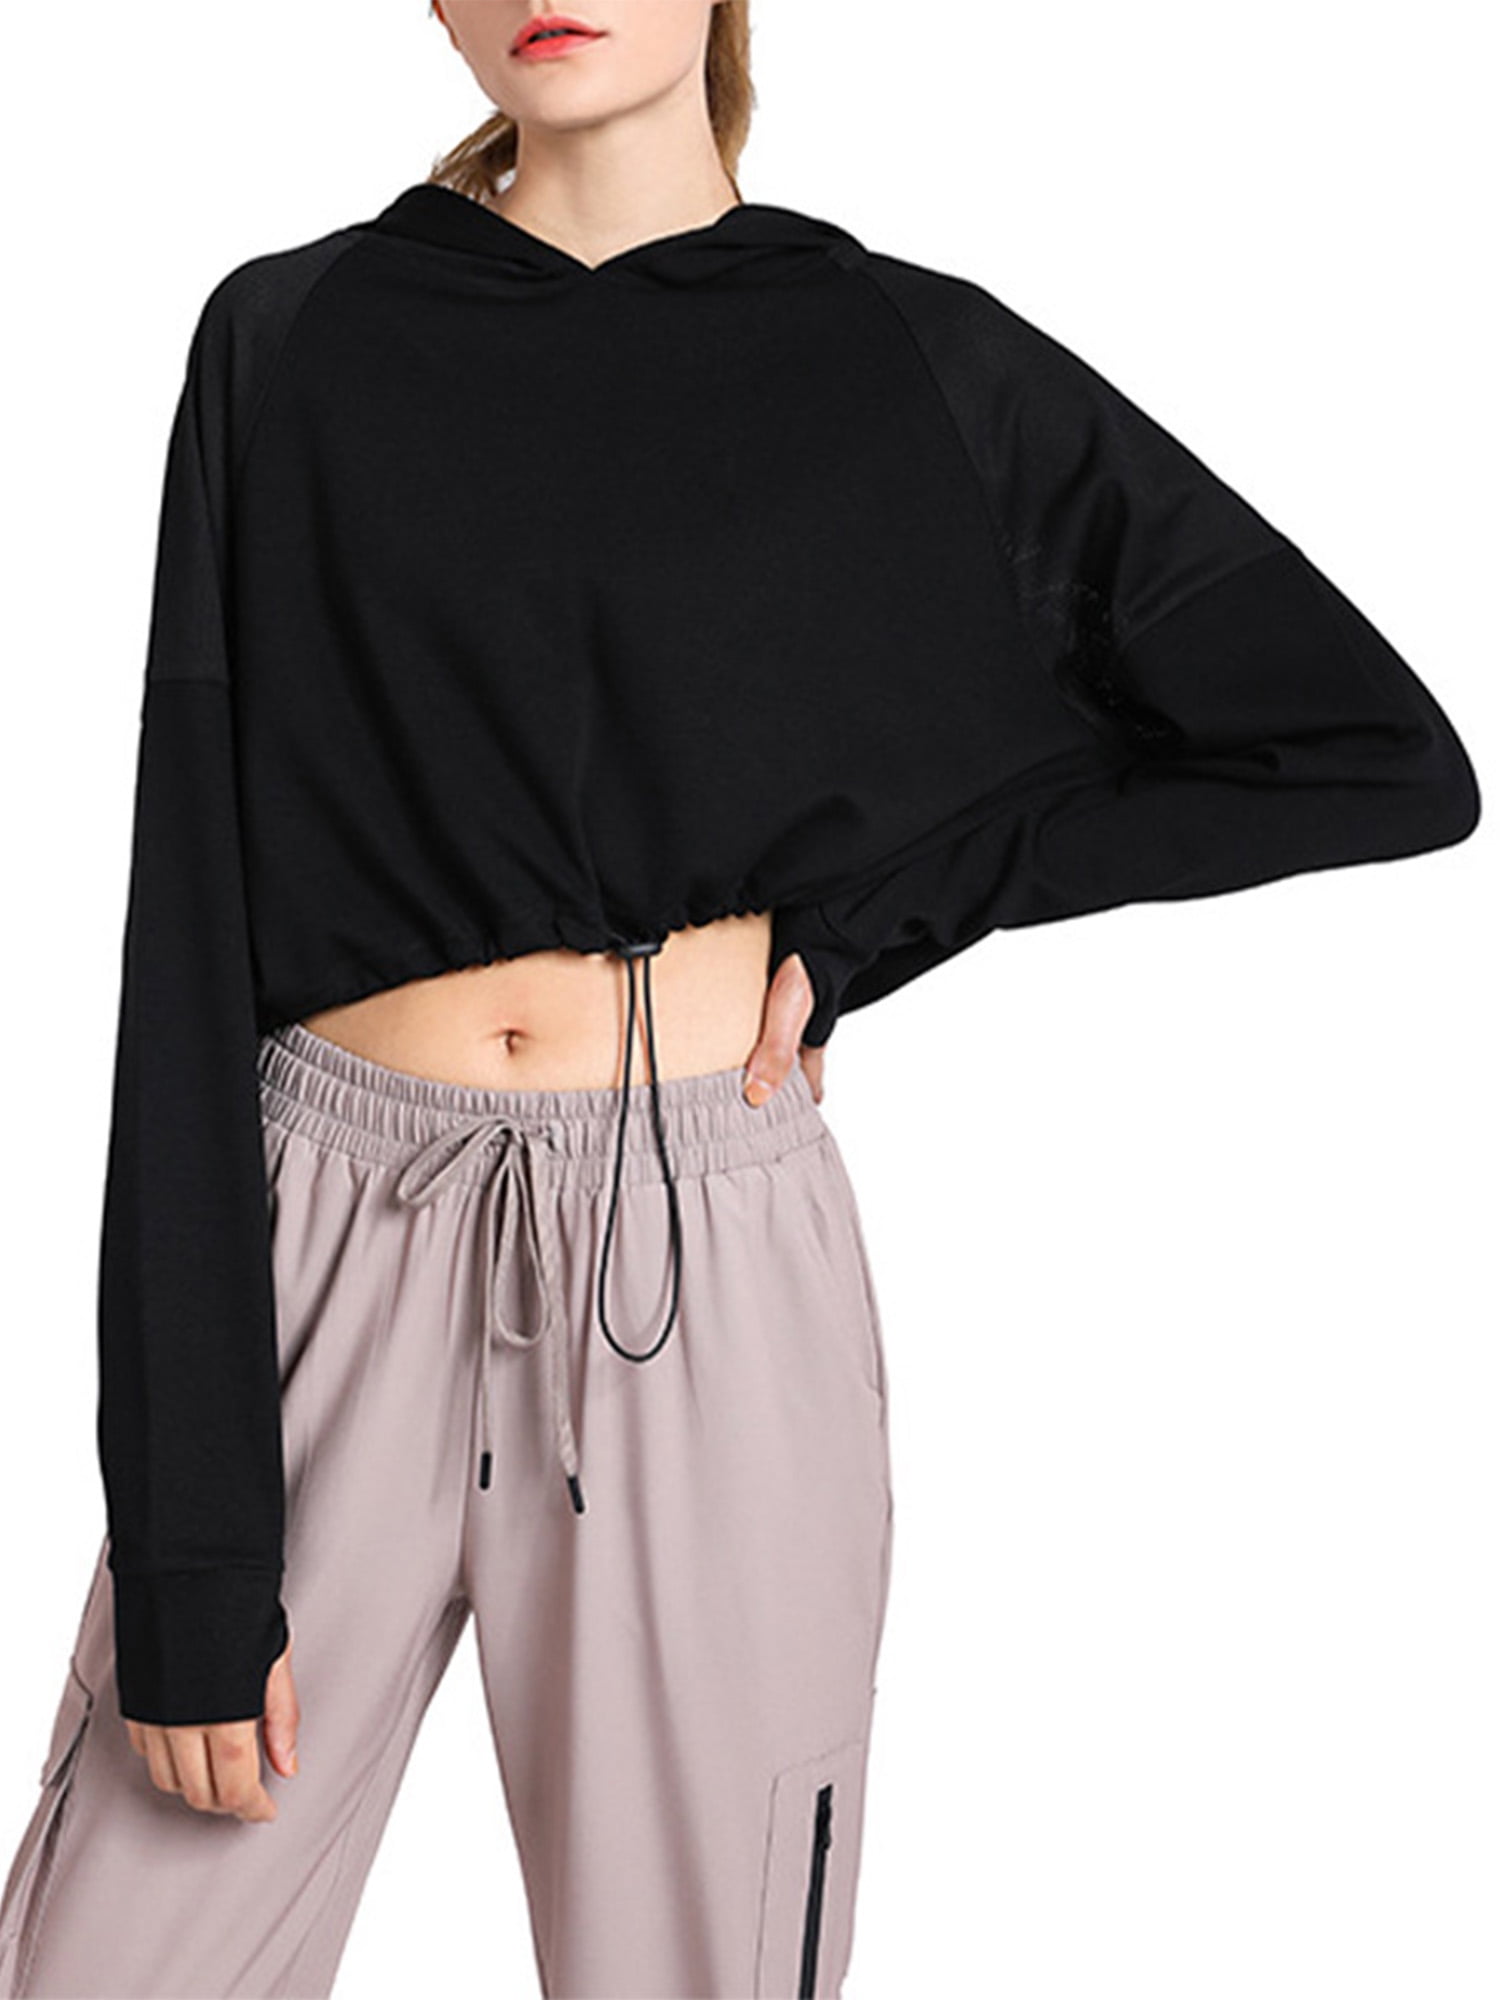 WSPLYSPJY Women Elegant Long Sleeve Cut Off Hoodie Sweatshirt Crop Tops 